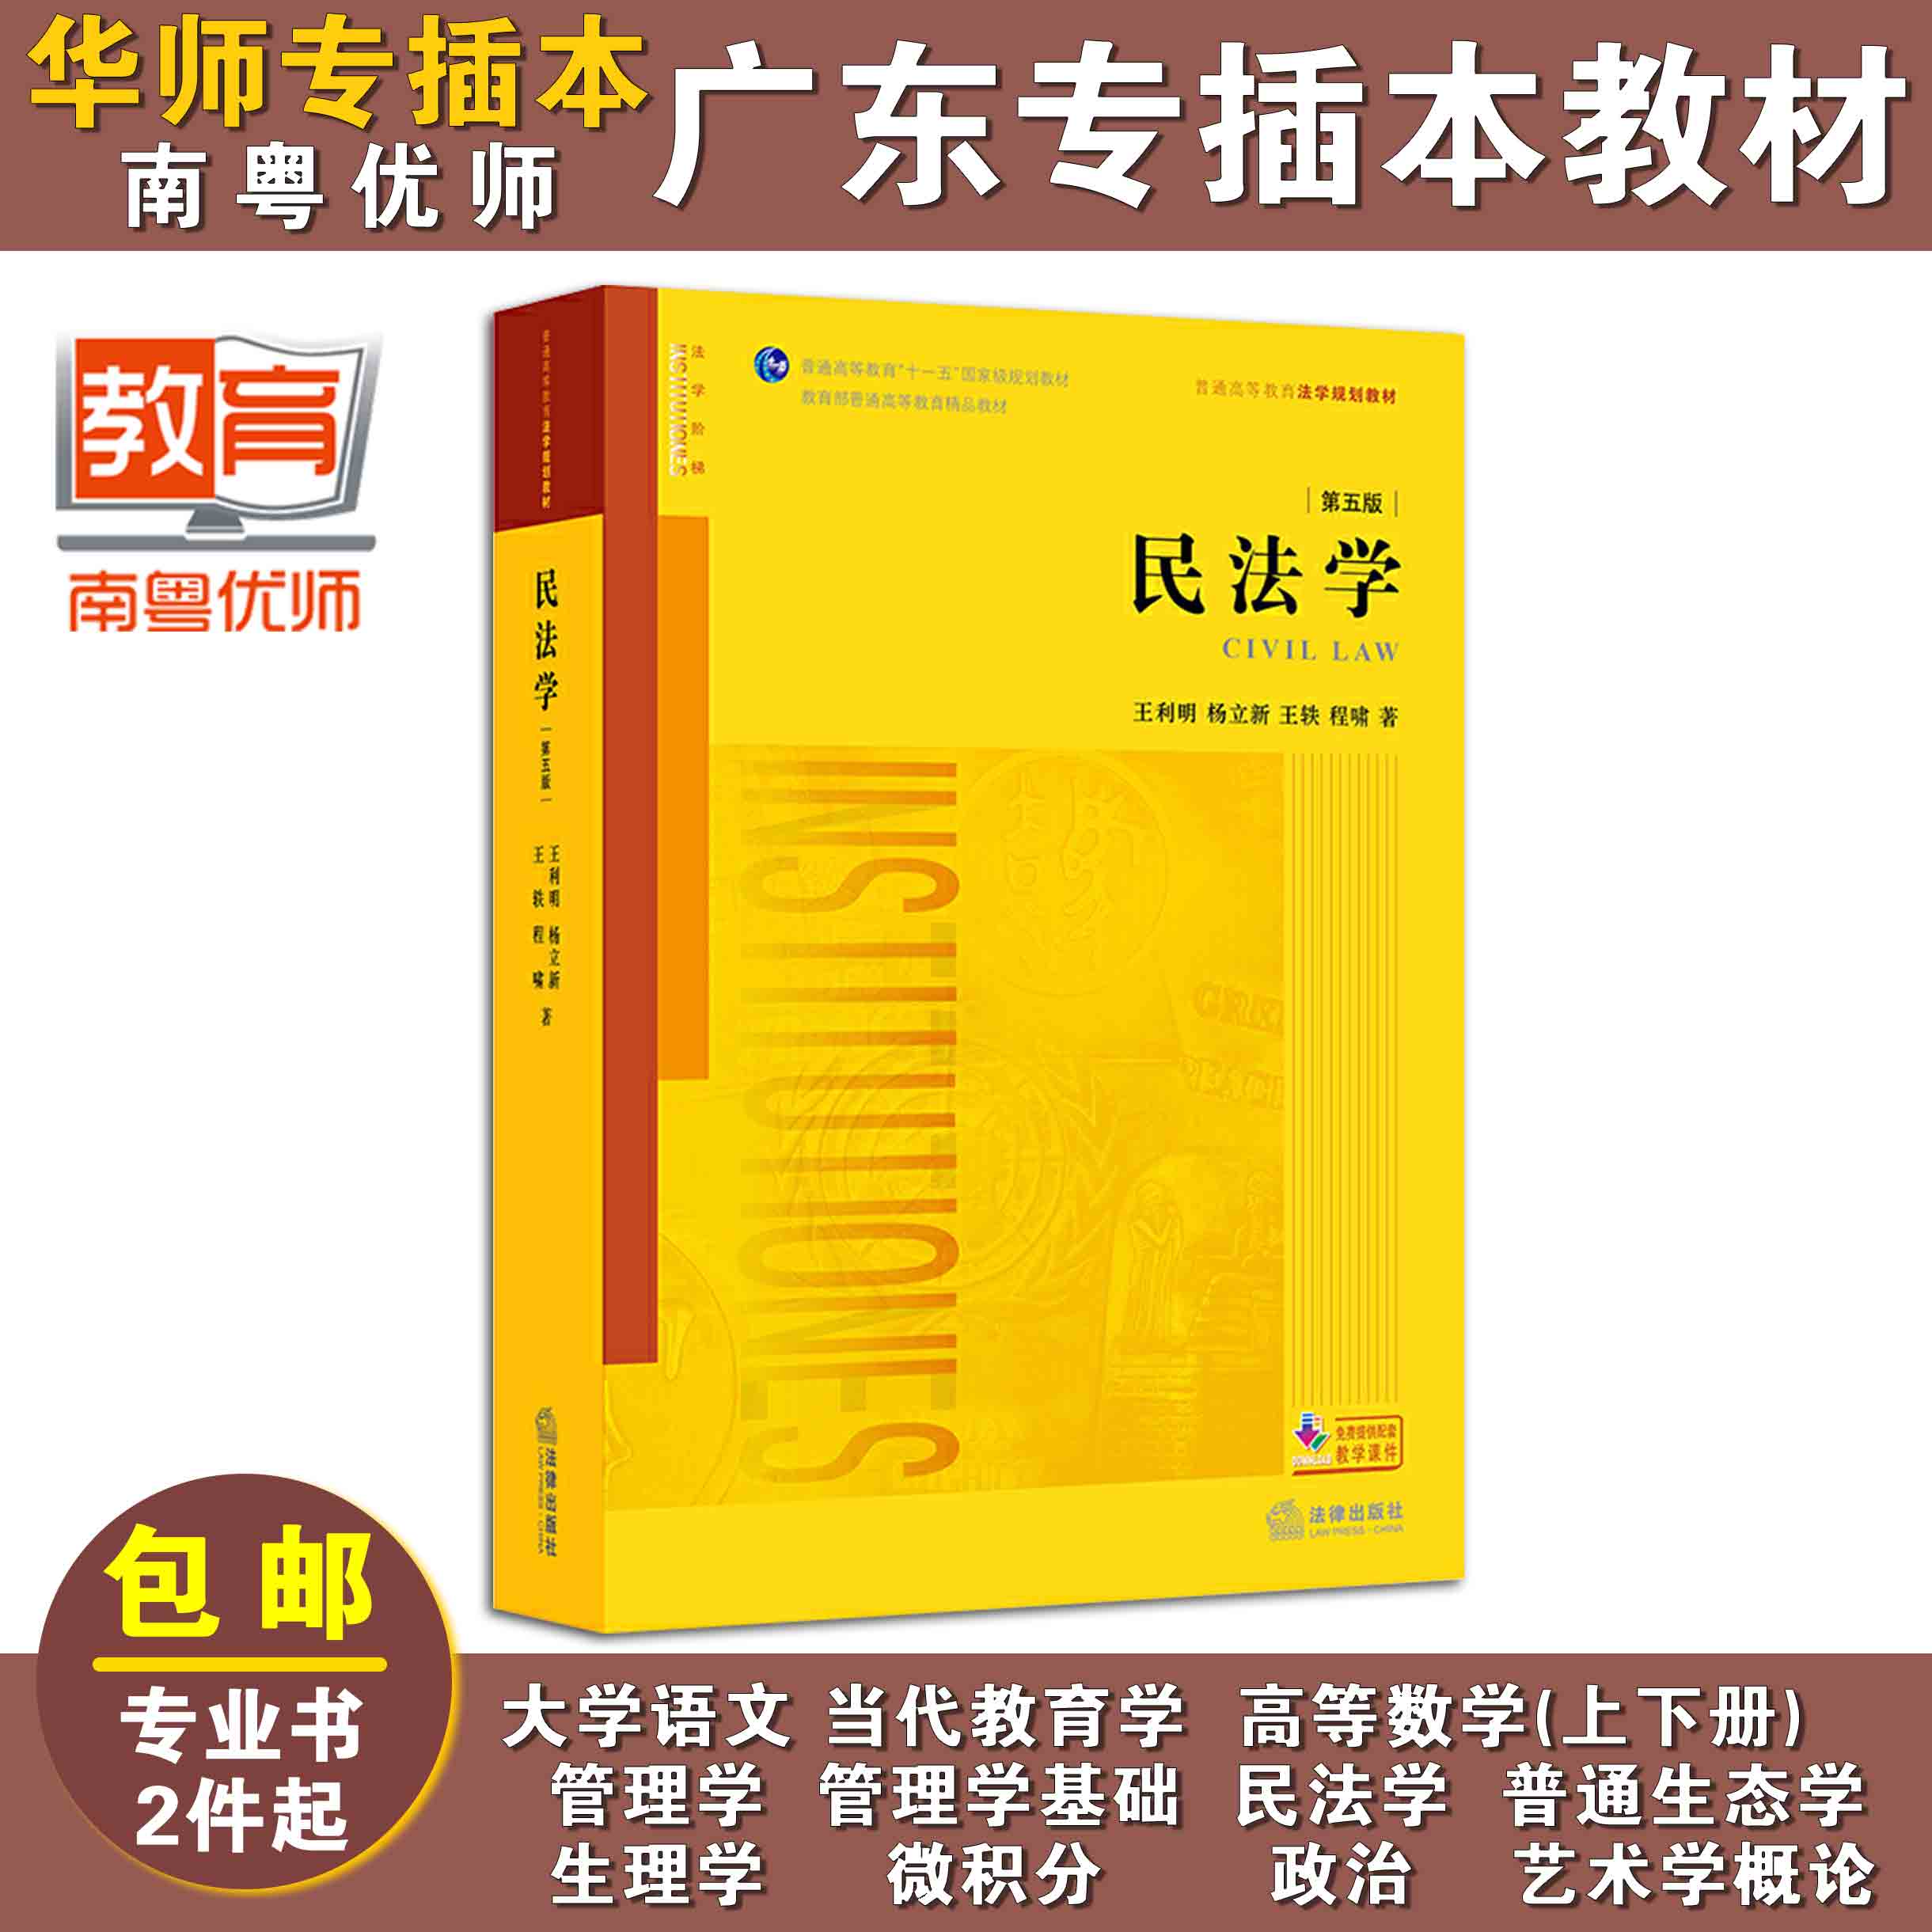 民法学(第五版),王利明,杨立新,王轶,程啸,法律出版社